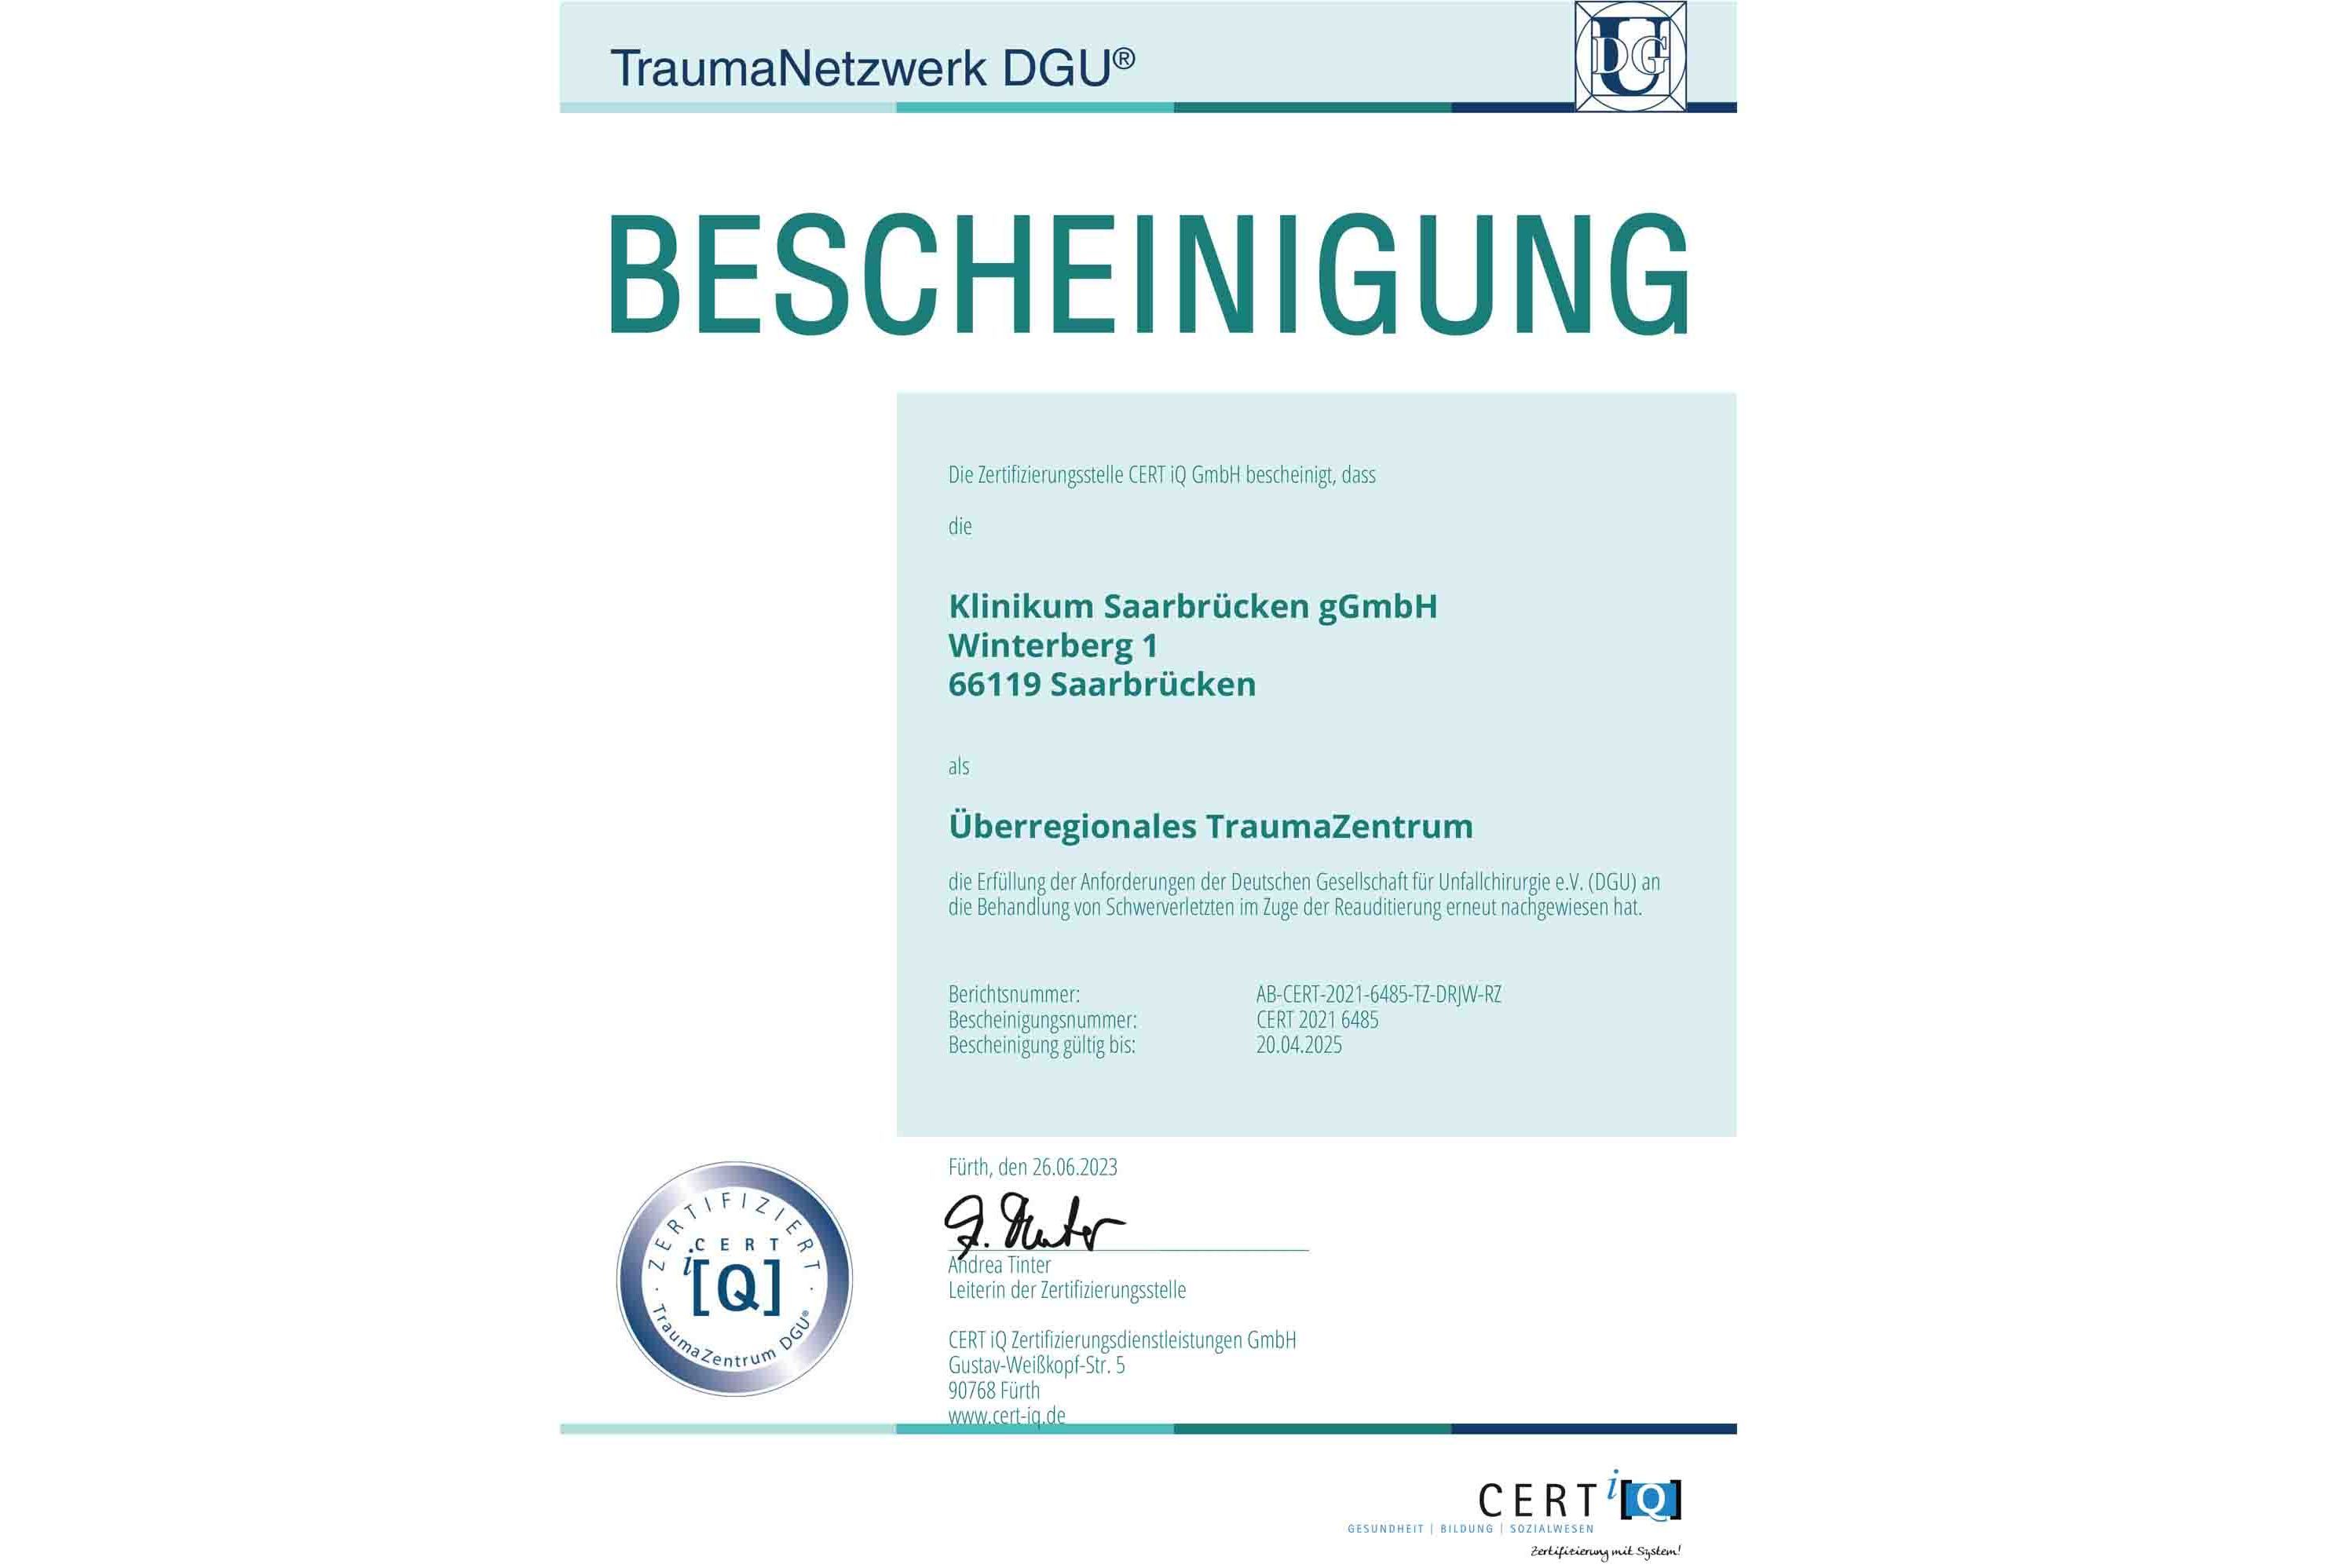 Das Klinikum Saarbrücken ist als Überregionales TraumaZentrum zertifiziert durch das TraumaNetzwerk DGU.